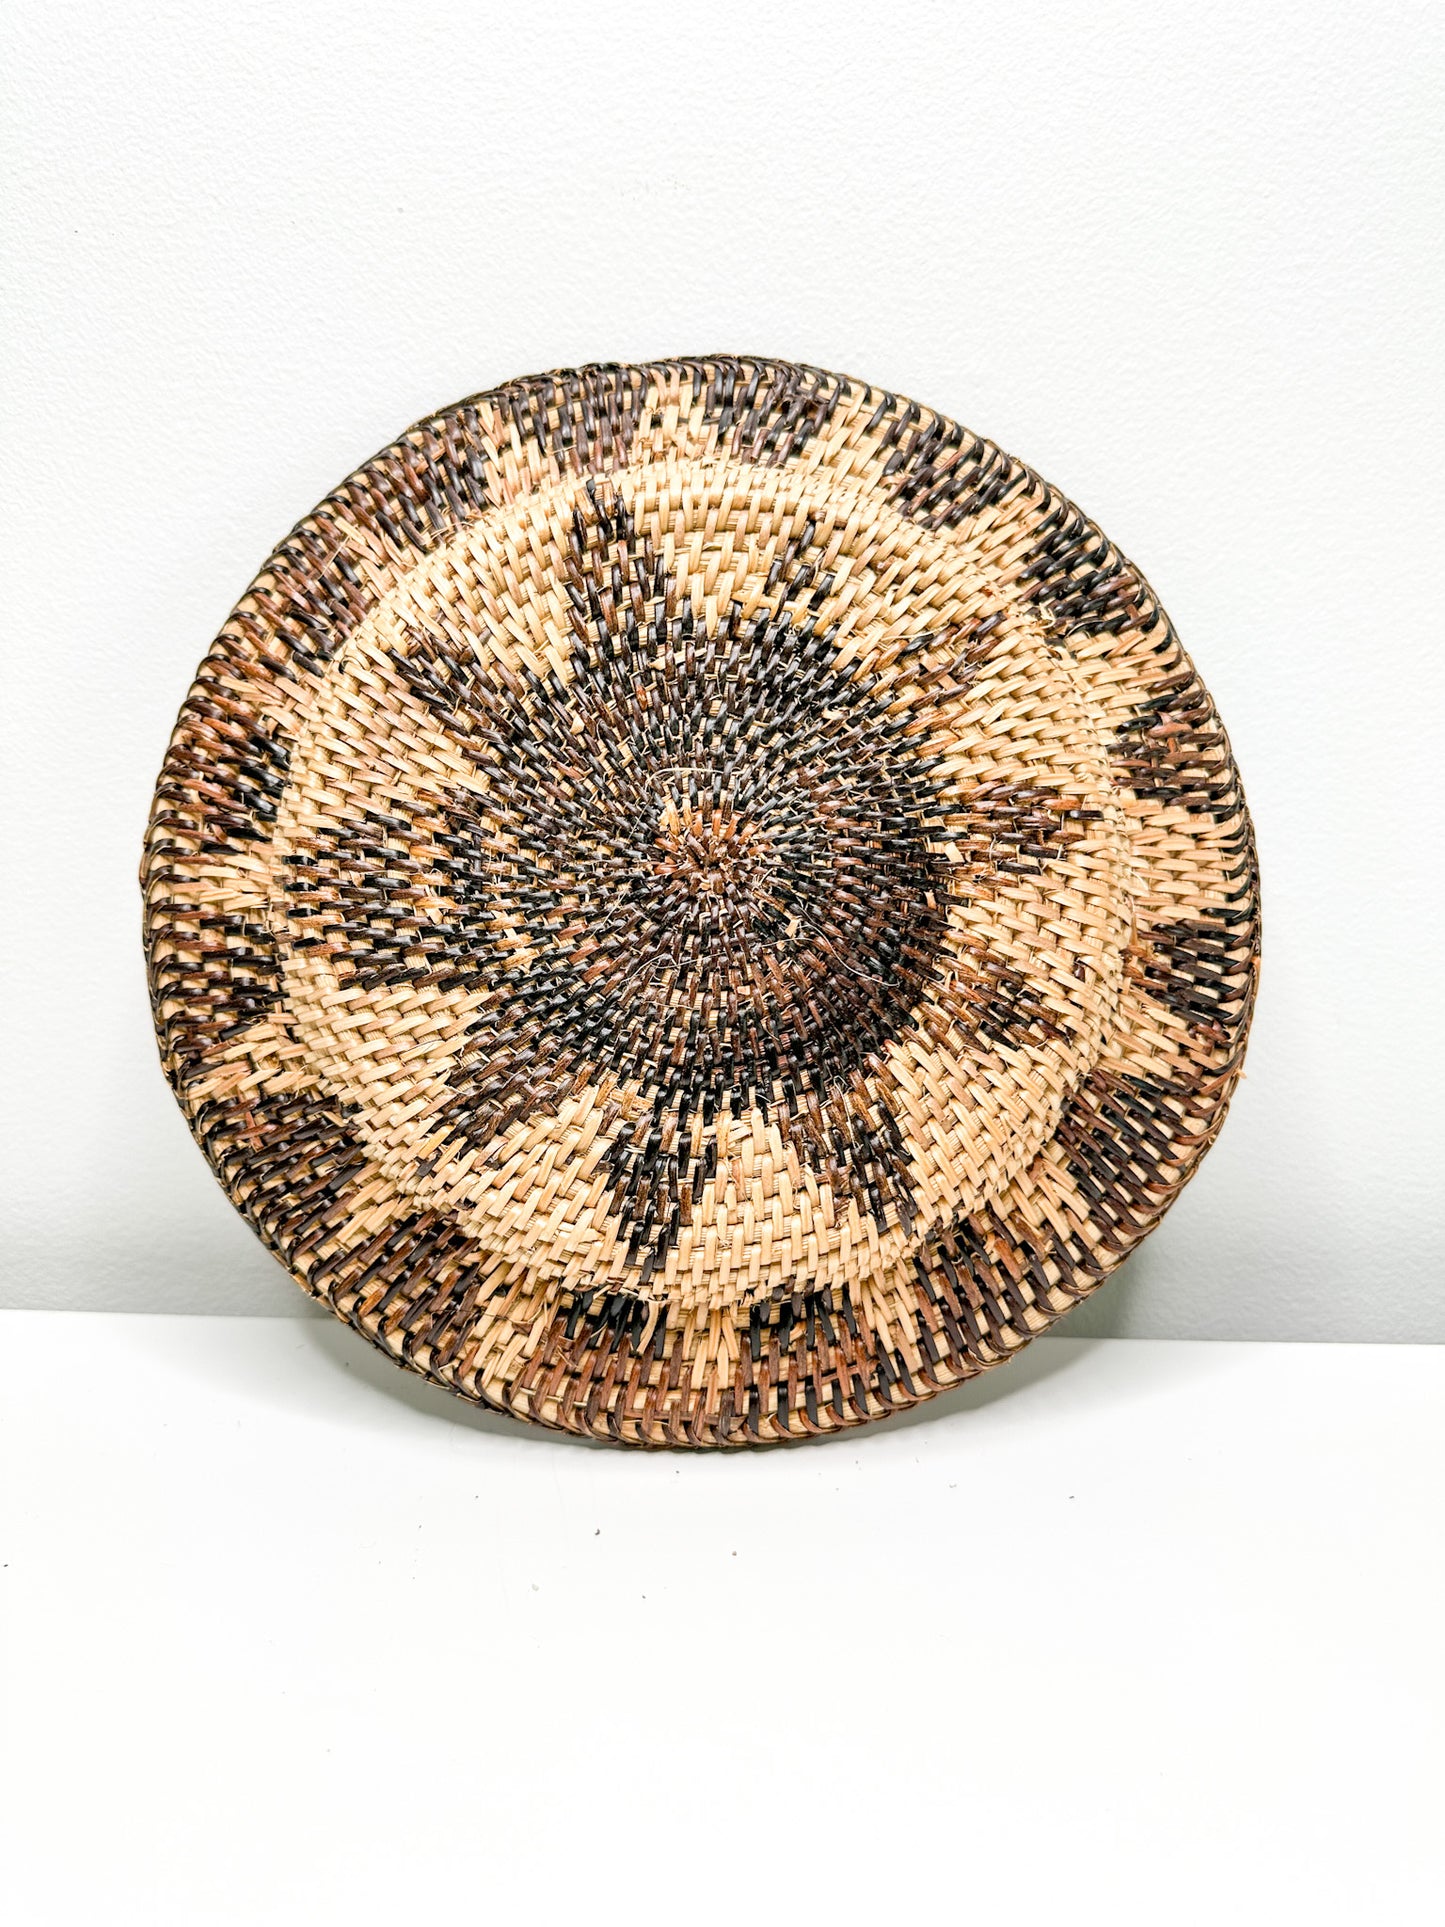 Wicker plate| Vintage Wicker Plate with a swirl flower pattern.